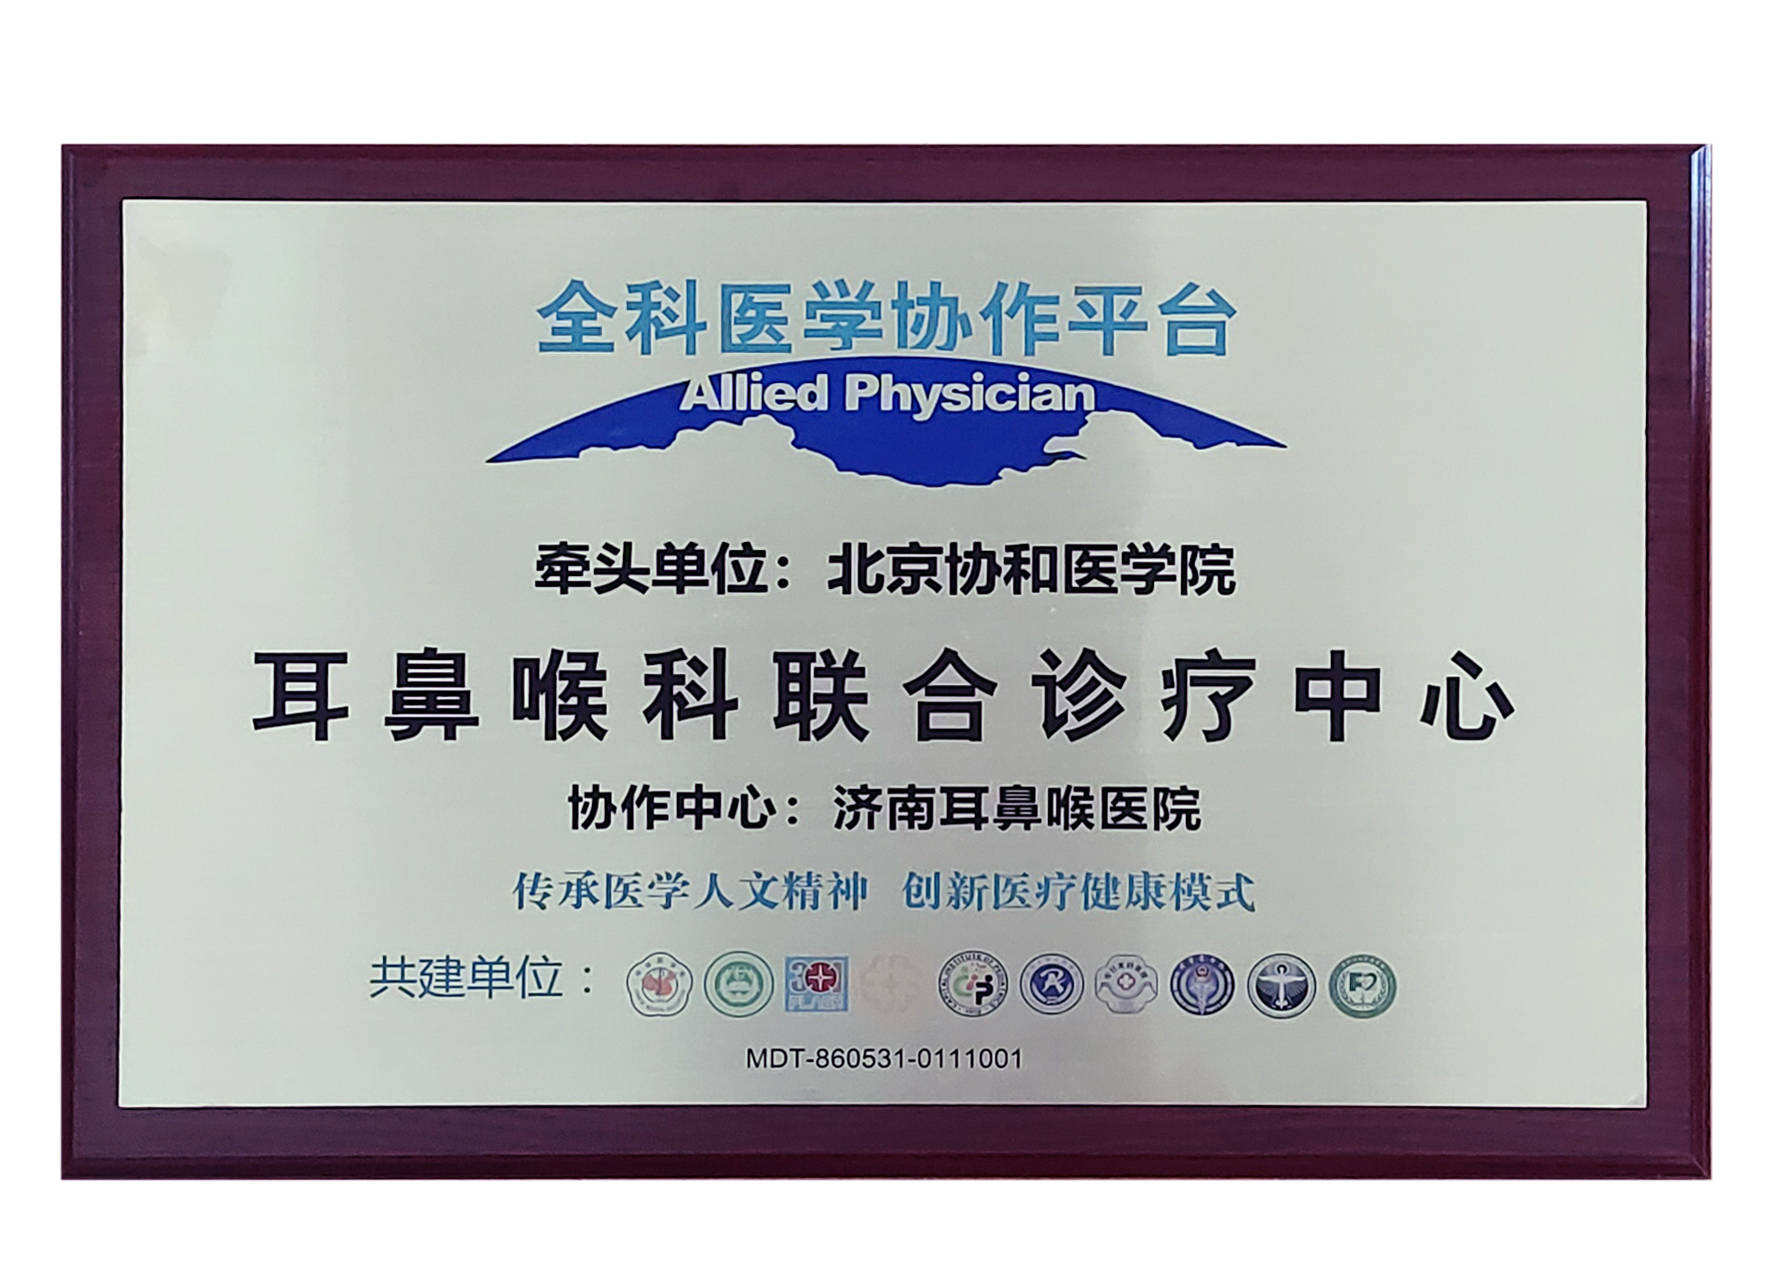 北京协和医院牌匾图片